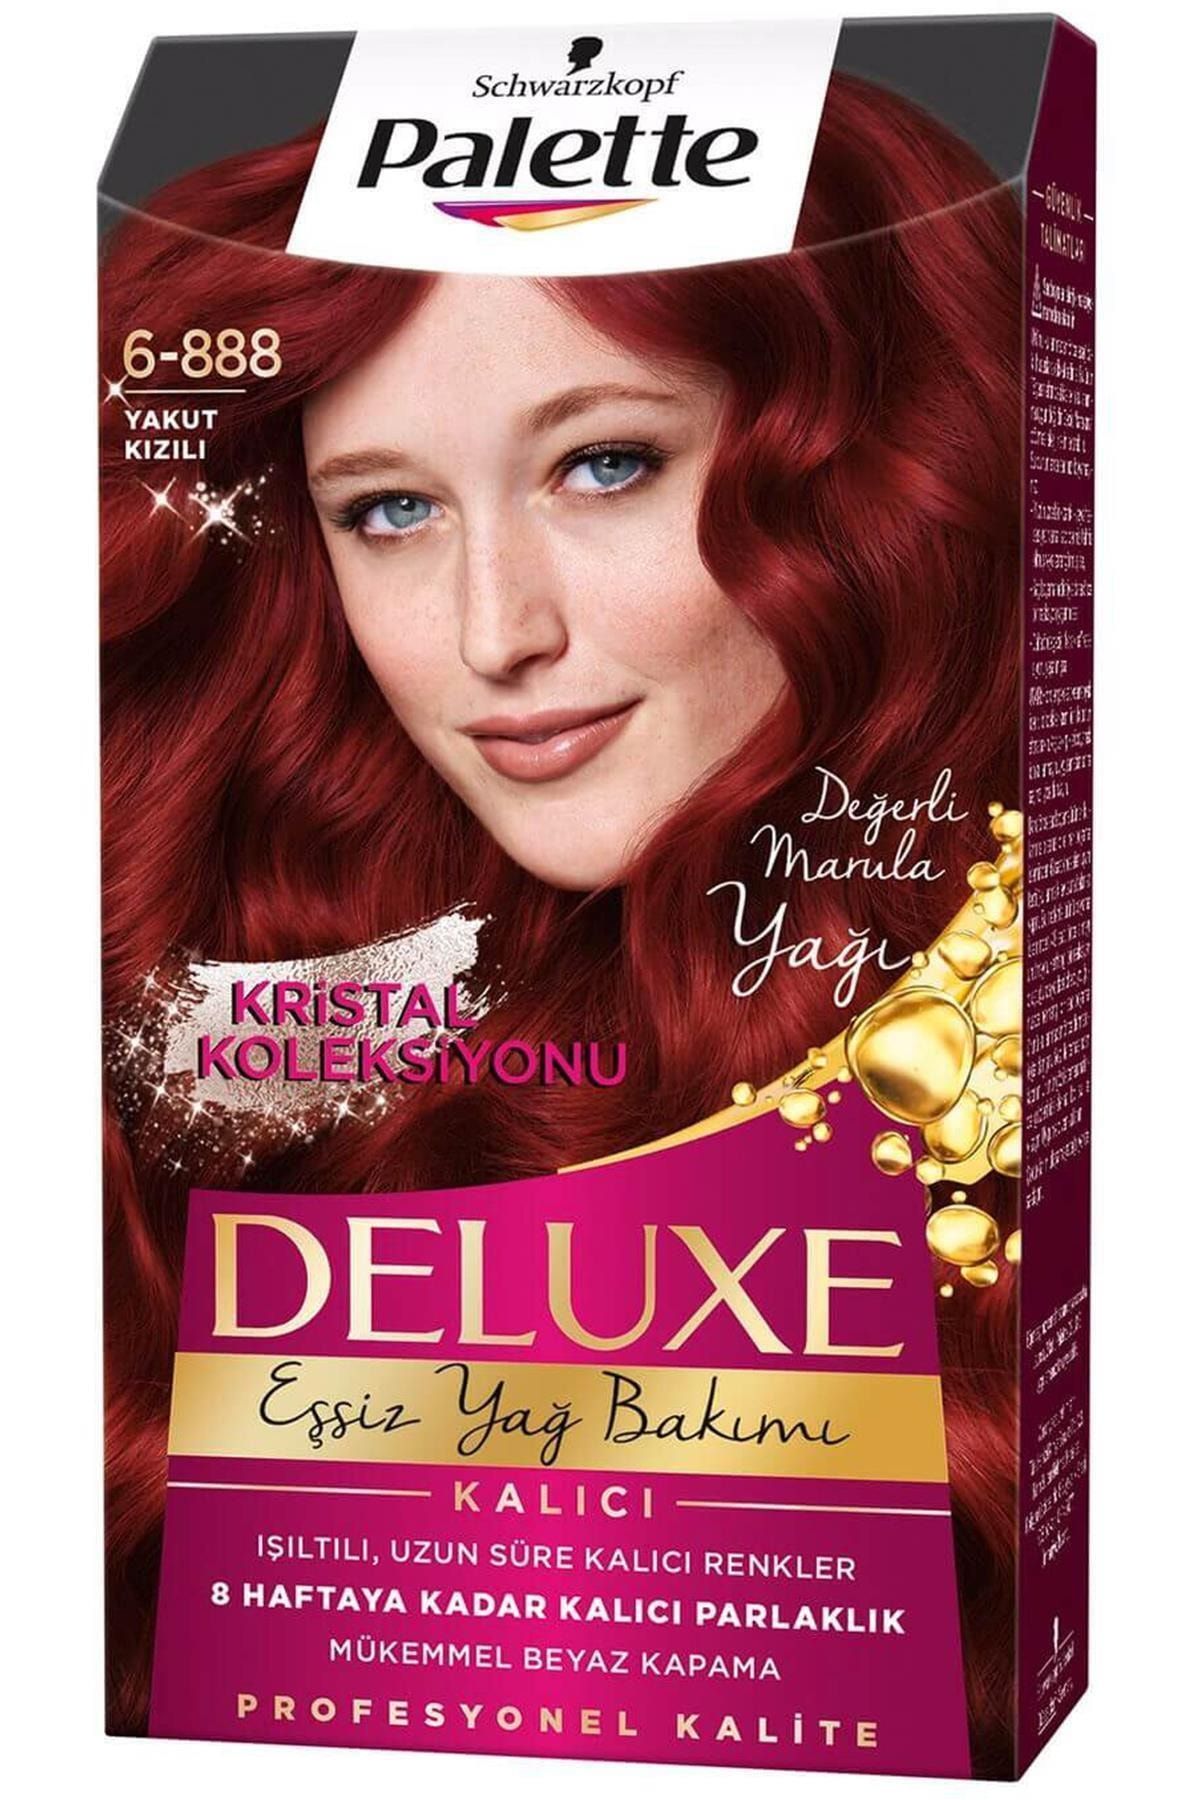 Palette Marka: Saç Boyası Sonbahar Kız No: 6-888 Kategori: Saç Boyası